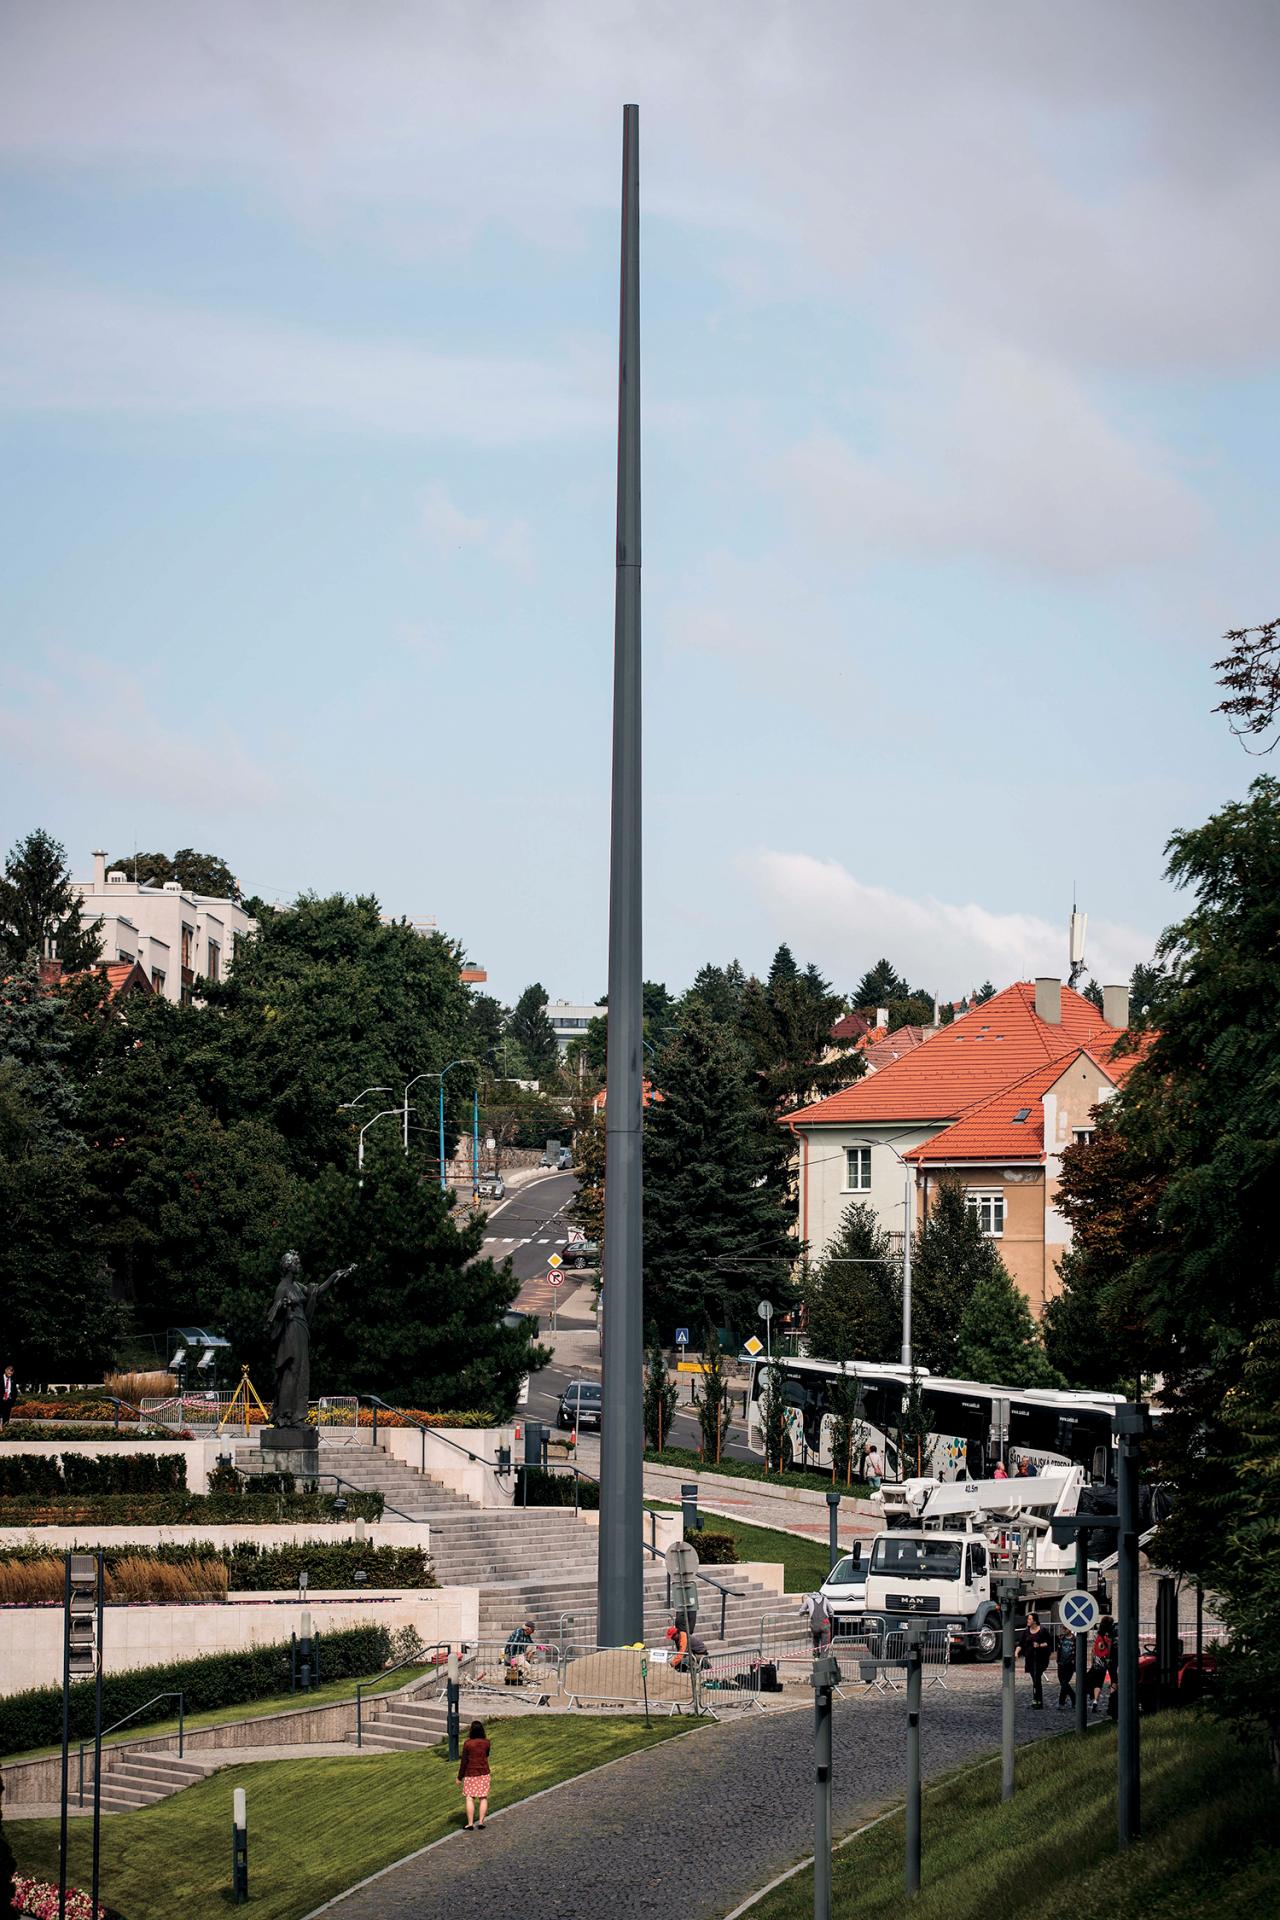 2019 Bratislava: Tridsaťmetrový stožiar Andreja Danka pred budovou parlamentu predstavuje aký -izmus?